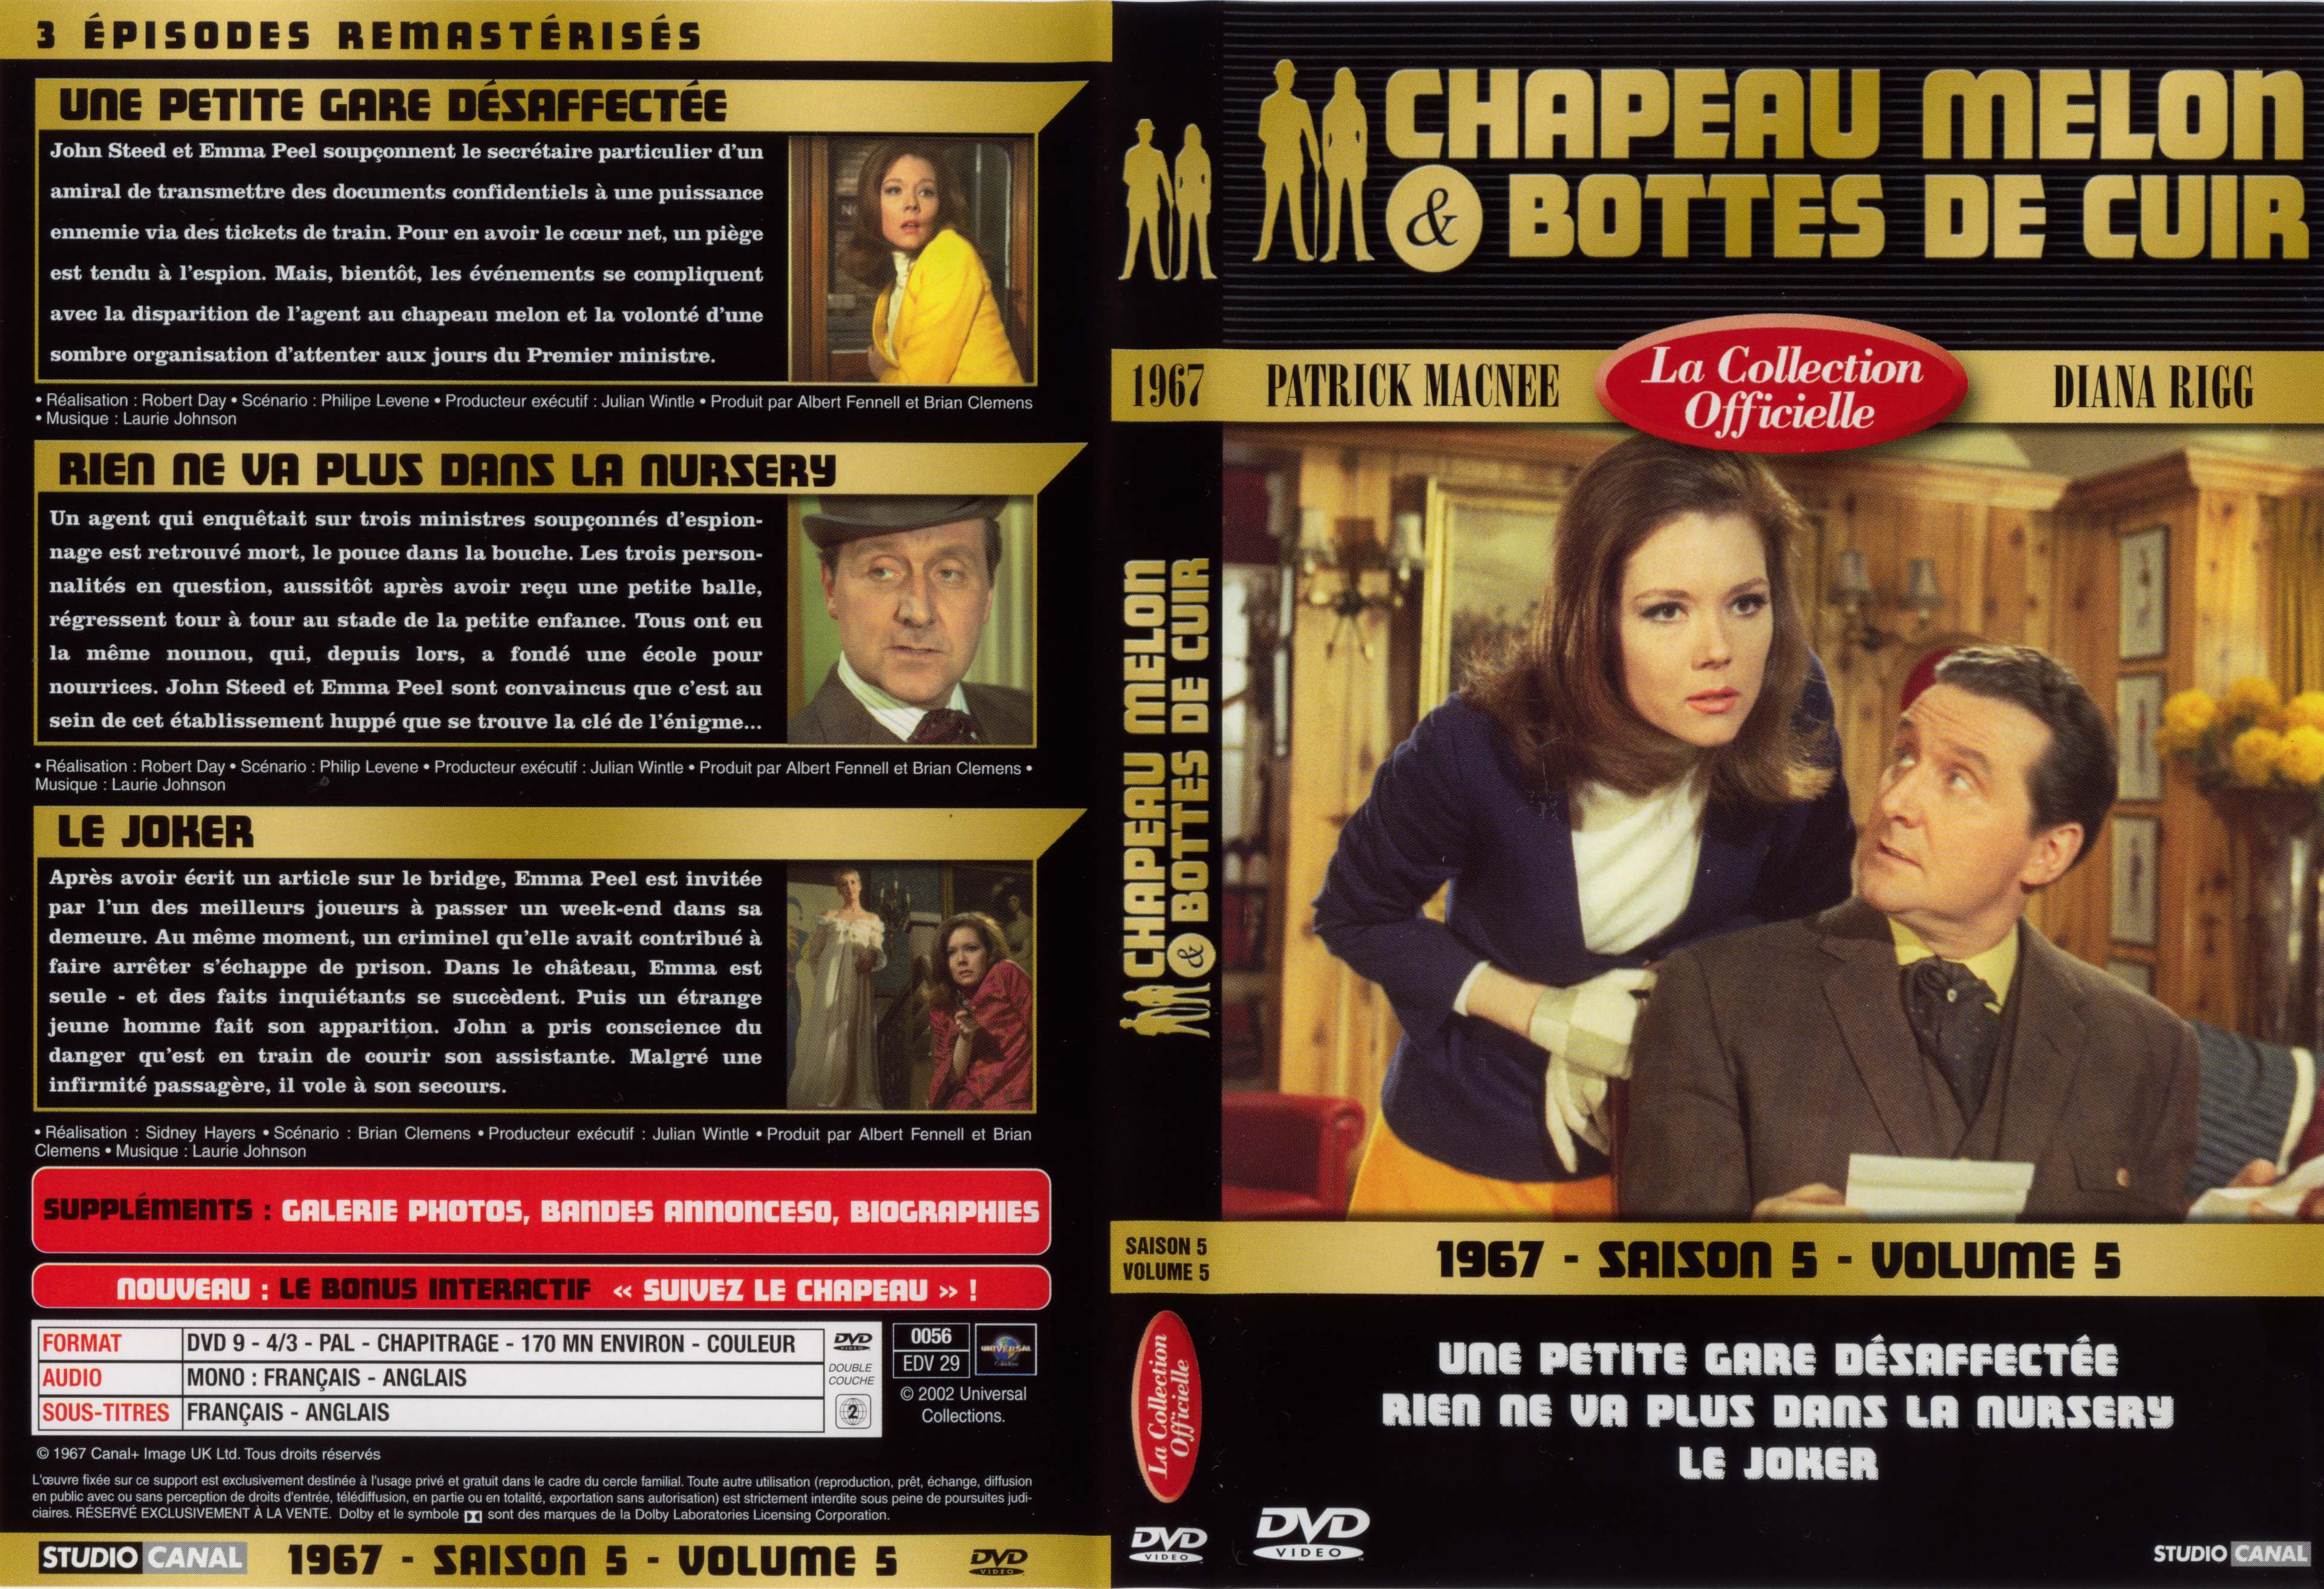 Jaquette DVD Chapeau melon et bottes de cuir 1967 saison 5 vol 5